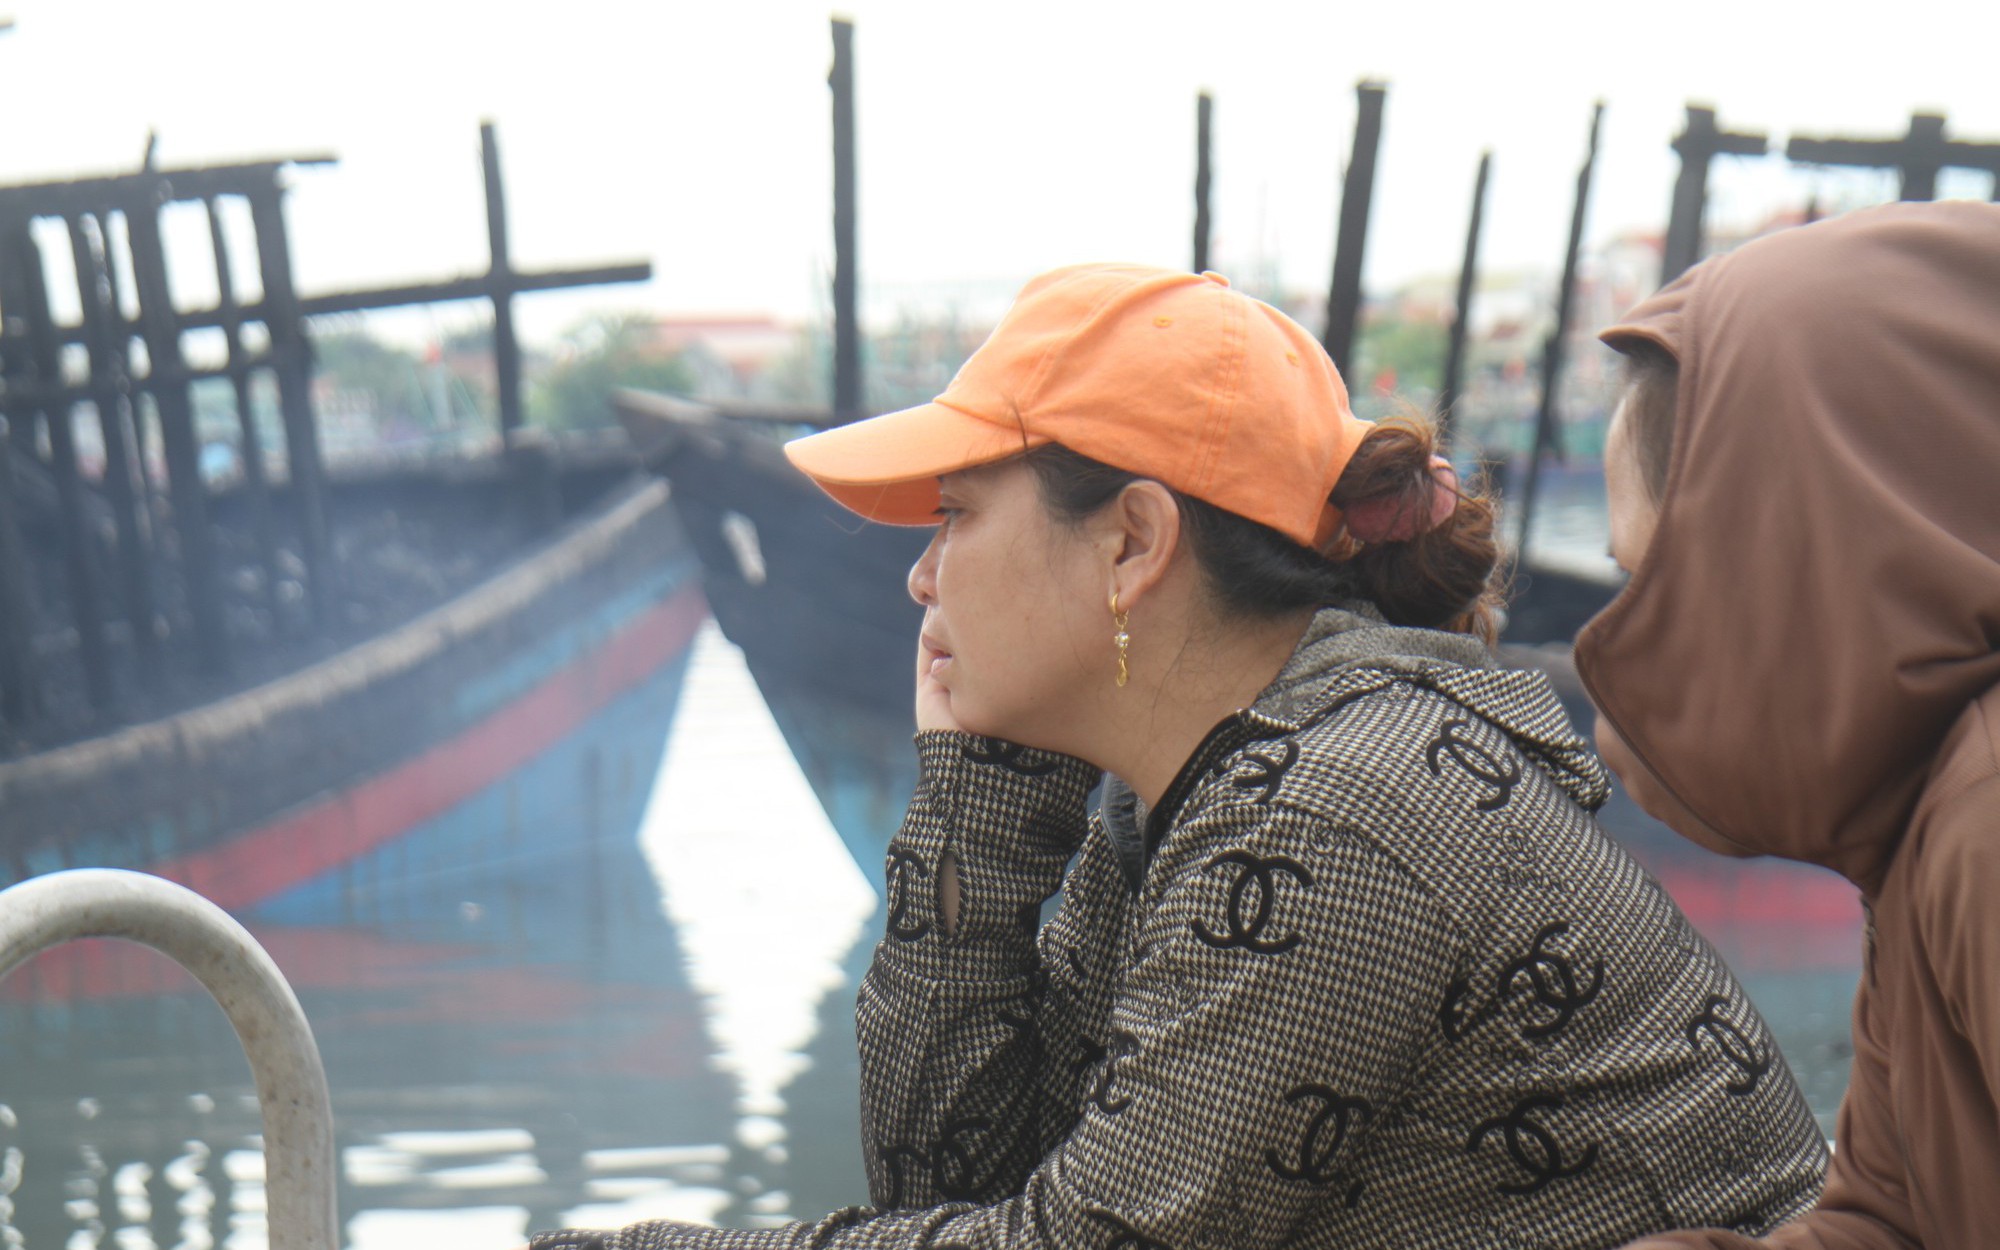 Nghệ An: Ngư dân bấn loạn, bất lực nhìn những chiếc tàu 67 trị giá 10 tỷ đồng cháy rụi, cứu trong vô vọng